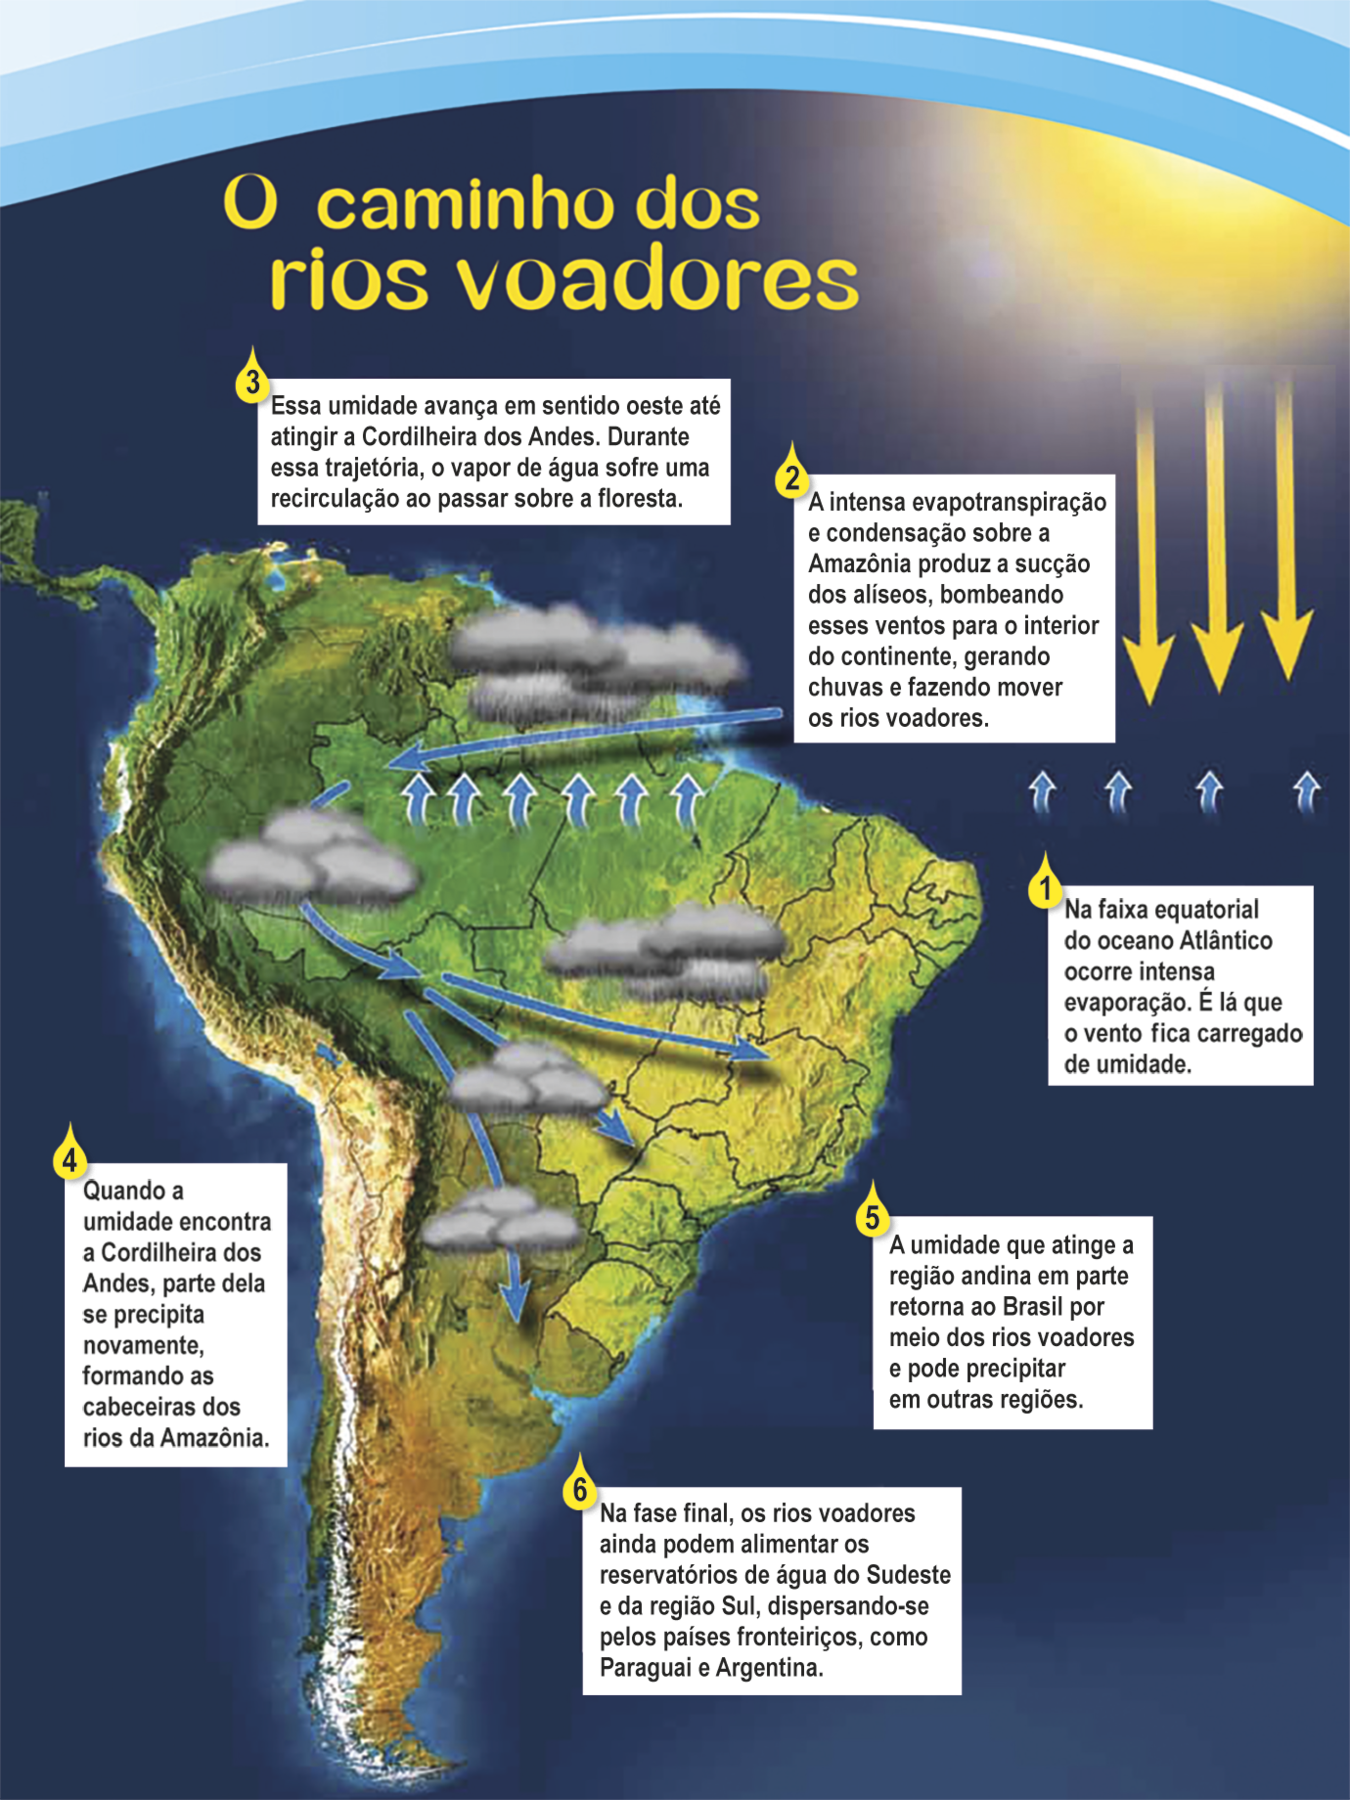 Infográfico. O caminho dos rios voadores. 
Infográfico mostrando imagem de satélite da América do Sul, com textos explicativos de 1 a 6, setas azuis, amarelas e desenhos de nuvens.
Do Oceano Atlântico, próximo à linha do Equador, saem setas azuis curtas que se encontram com setas amarelas, representando a evaporação. Texto explicativo 1: Na faixa equatorial do Oceano Atlântico ocorre intensa evaporação. É lá que o vento fica carregado de umidade. Fim do texto 1.
Sobre a imagem de satélite da América do Sul há setas azuis curtas na região da Amazônia  e uma seta azul longa e fina apontada para a parte oeste da América do Sul e, sobre a qual estão nuvens cinzas carregadas de umidade, chuva, 
representando a evapotranspiração e os transporte das nuvens carregadas (rios voadores) para o interior do continente. Texto explicativo 2: A intensa evapotranspiração e condensação sobre a  Amazônia produz sucção dos alíseos, bombeando esses ventos para o interior do continente, gerando chuvas e fazendo mover os rios voadores. 
Texto explicativo 3: Essa umidade avança em sentido oeste até atingir a Cordilheira dos Andes. Durante essa trajetória, o vapor de água sofre uma recirculação ao passar sobre a floresta. Fim do texto 3. 
No extremo oeste da América do Sul, região  montanhosa dos Andes, há uma seta azul curva e fina proveniente da  Amazônia e no meio dela há nuvens carregadas. Texto explicativo 4: Quando a umidade encontra a Cordilheira dos Andes, parte dela se precipita novamente, formando as cabeceiras dos rios da Amazônia. Fim do texto 4. 
Sobre a imagem da América do Sul, a seta azul curva toma a direção leste, voltando-se para o interior do continente e se divide em três outras setas azuis  com nuvens carregadas de umidade: uma seta em direção ao sudeste do Brasil, outra em direção ao sul do Brasil e outra em direção à Argentina e ao Paraguai. Sobre essas três regiões há presença de chuva. Texto explicativo 5:  
A umidade que  atinge a região andina em parte retorna ao Brasil por meio dos rios voadores e pode precipitar em outras regiões. Texto explicativo 6: Na fase final, os rios voadores ainda podem alimentar os reservatórios de água do Sudeste e da Região Sul, dispersando-se pelos países fronteiriços, como Paraguai e Argentina.